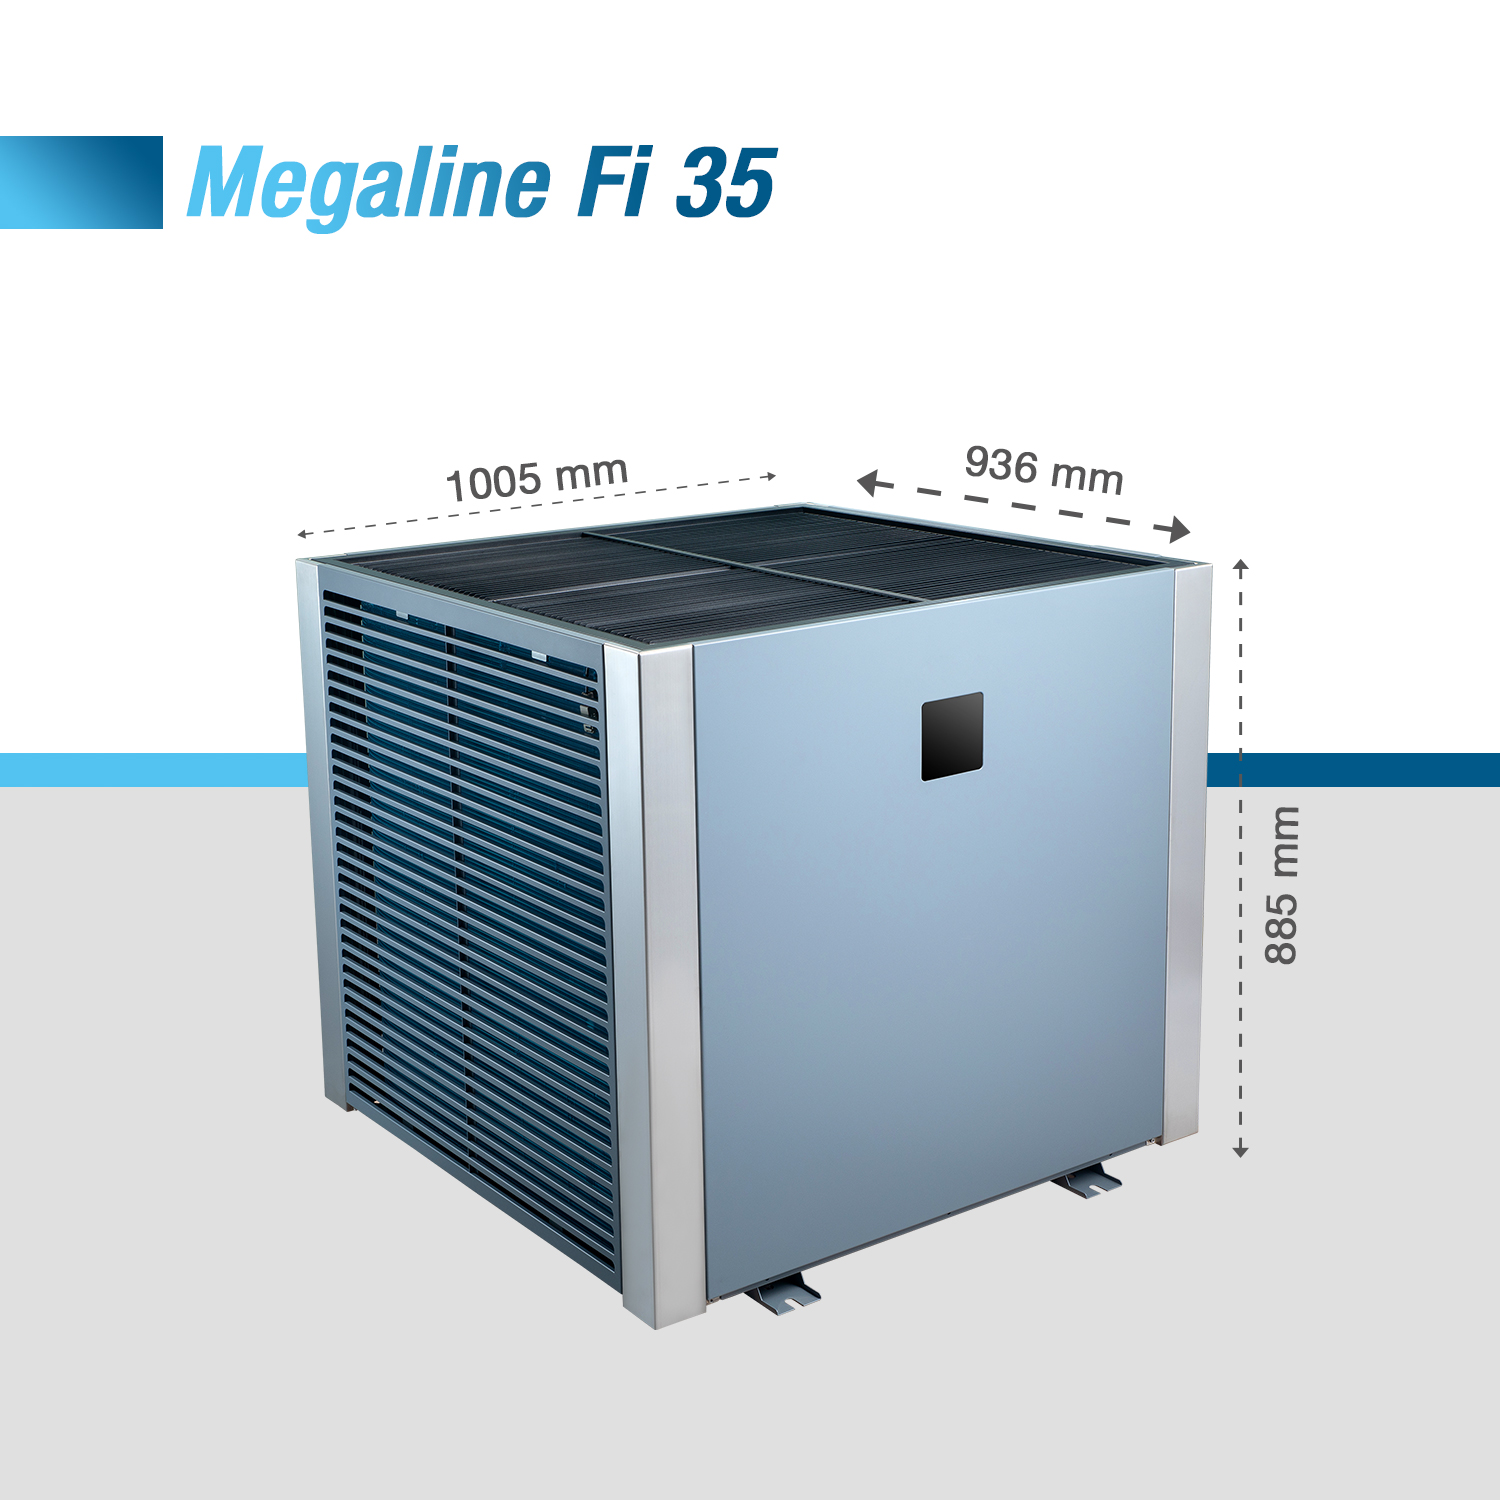 Megaline 35 Fi